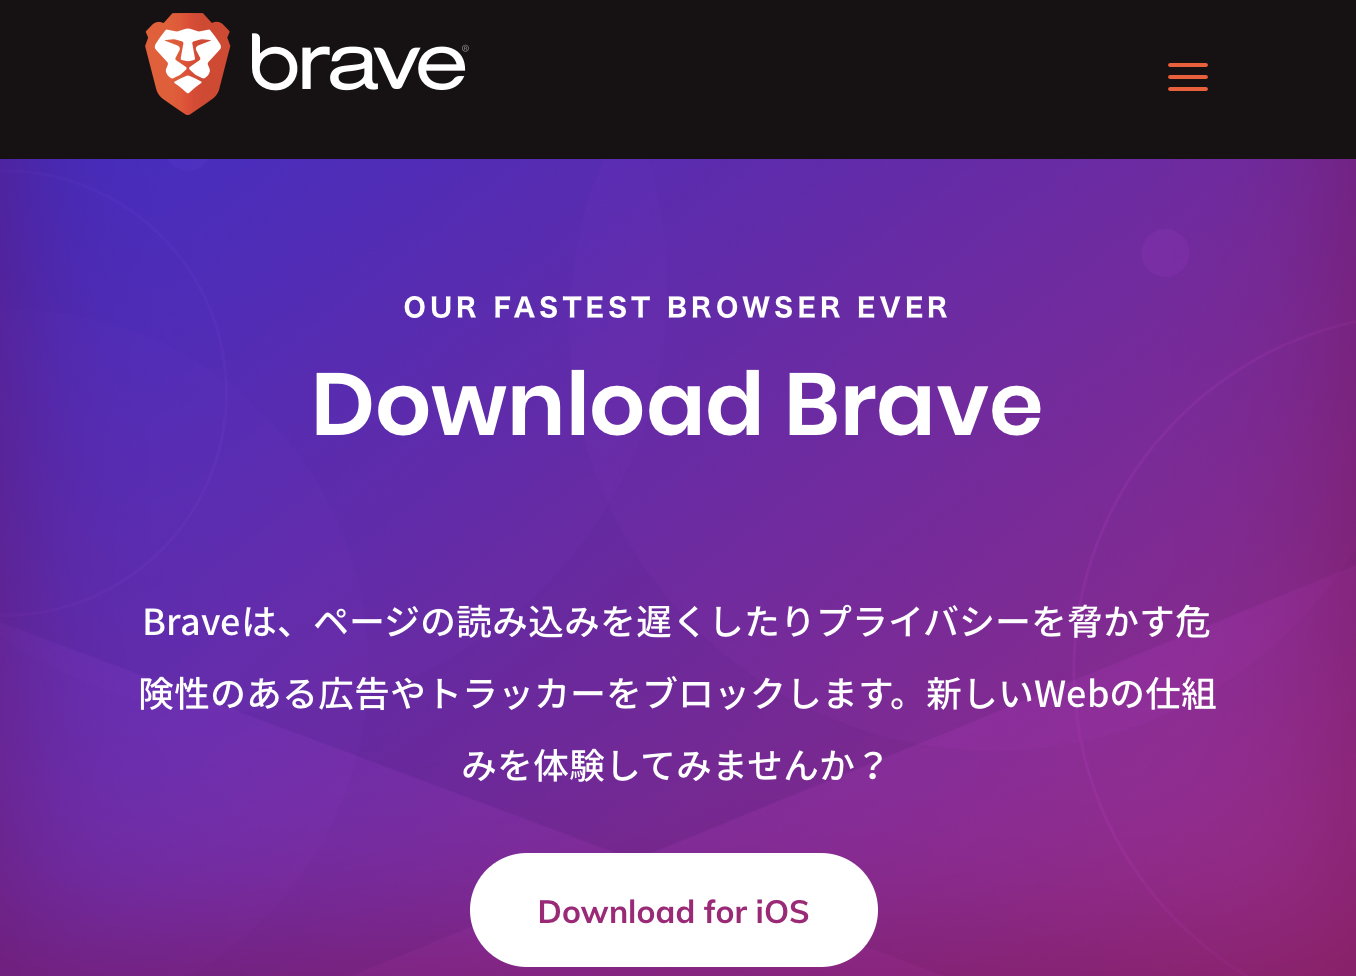 Braveブラウザダウンロード画面